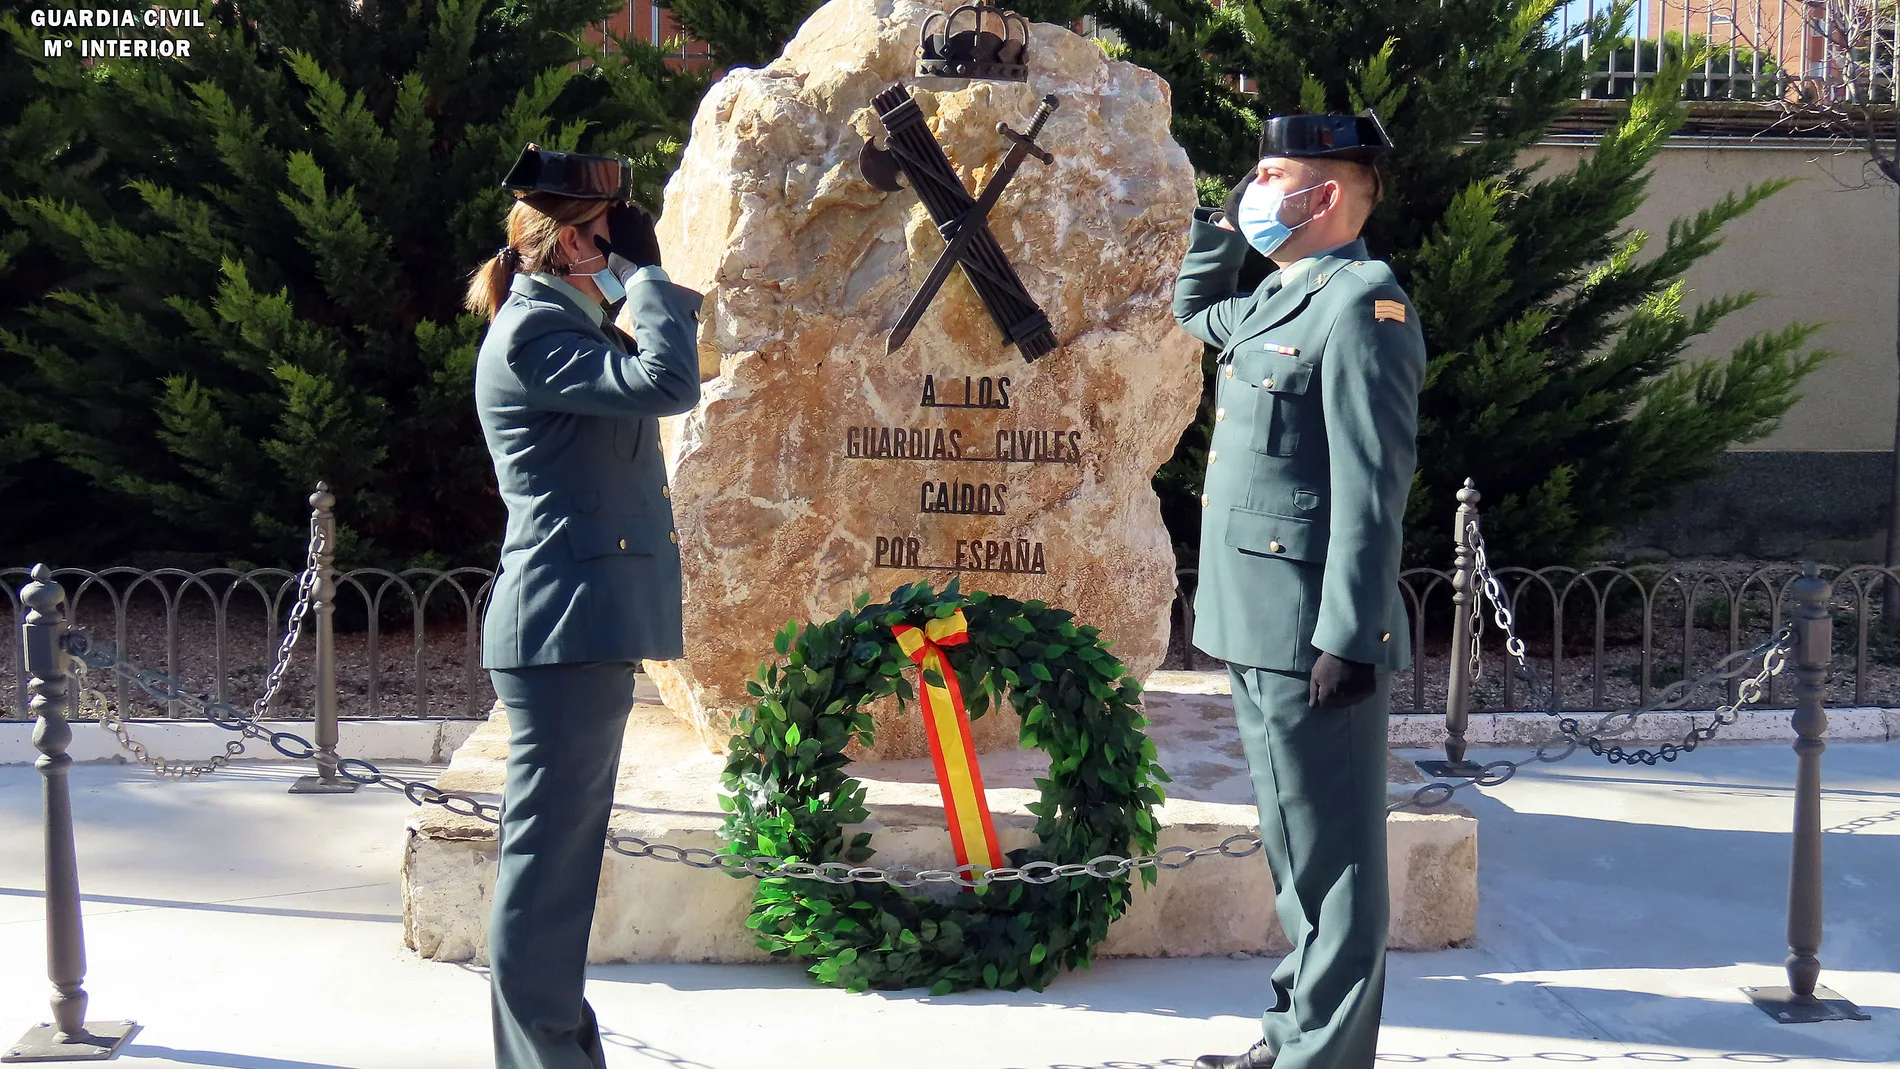 La Comandancia de la Guardia Civil de Palencia inaugura un monolito en honor a todos los agentes del cuerpo caídos por España